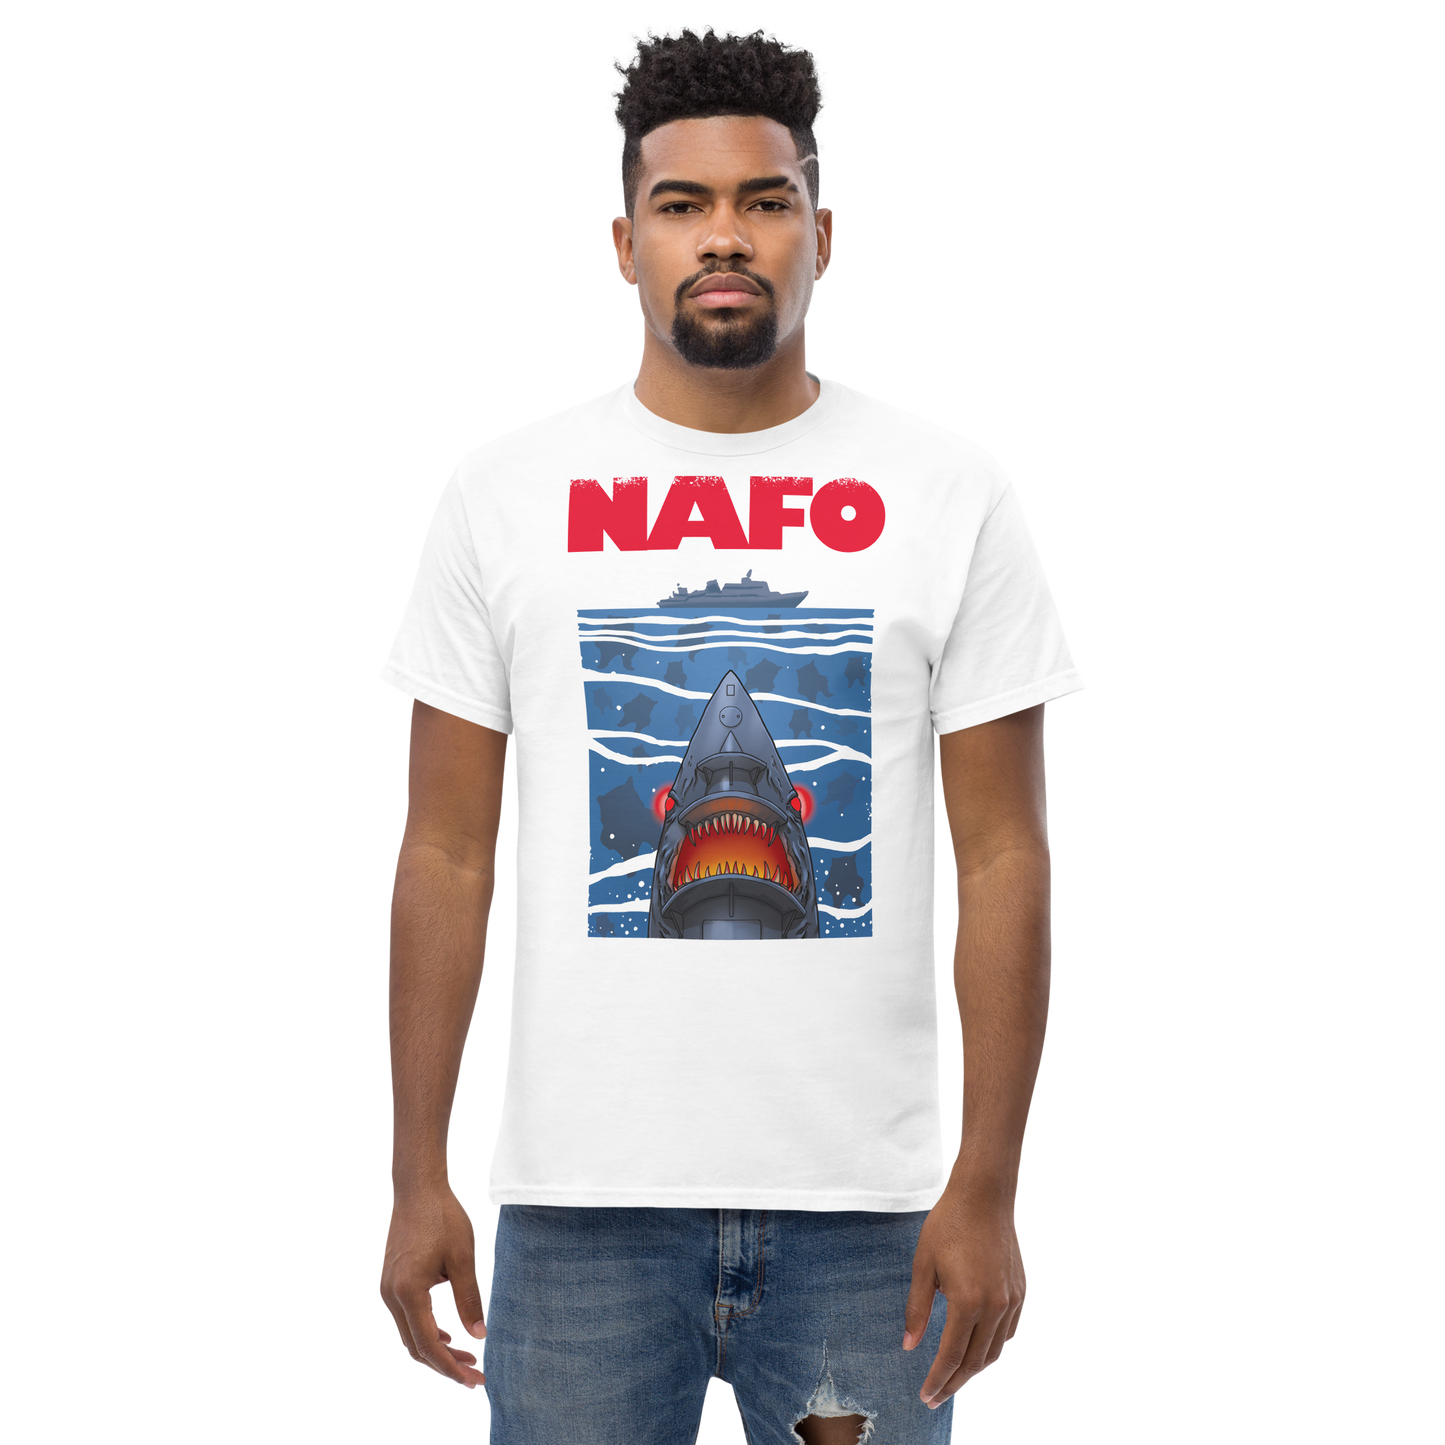 NAFO x Grandpa Yurko Shark Drone Ship T-Shirt